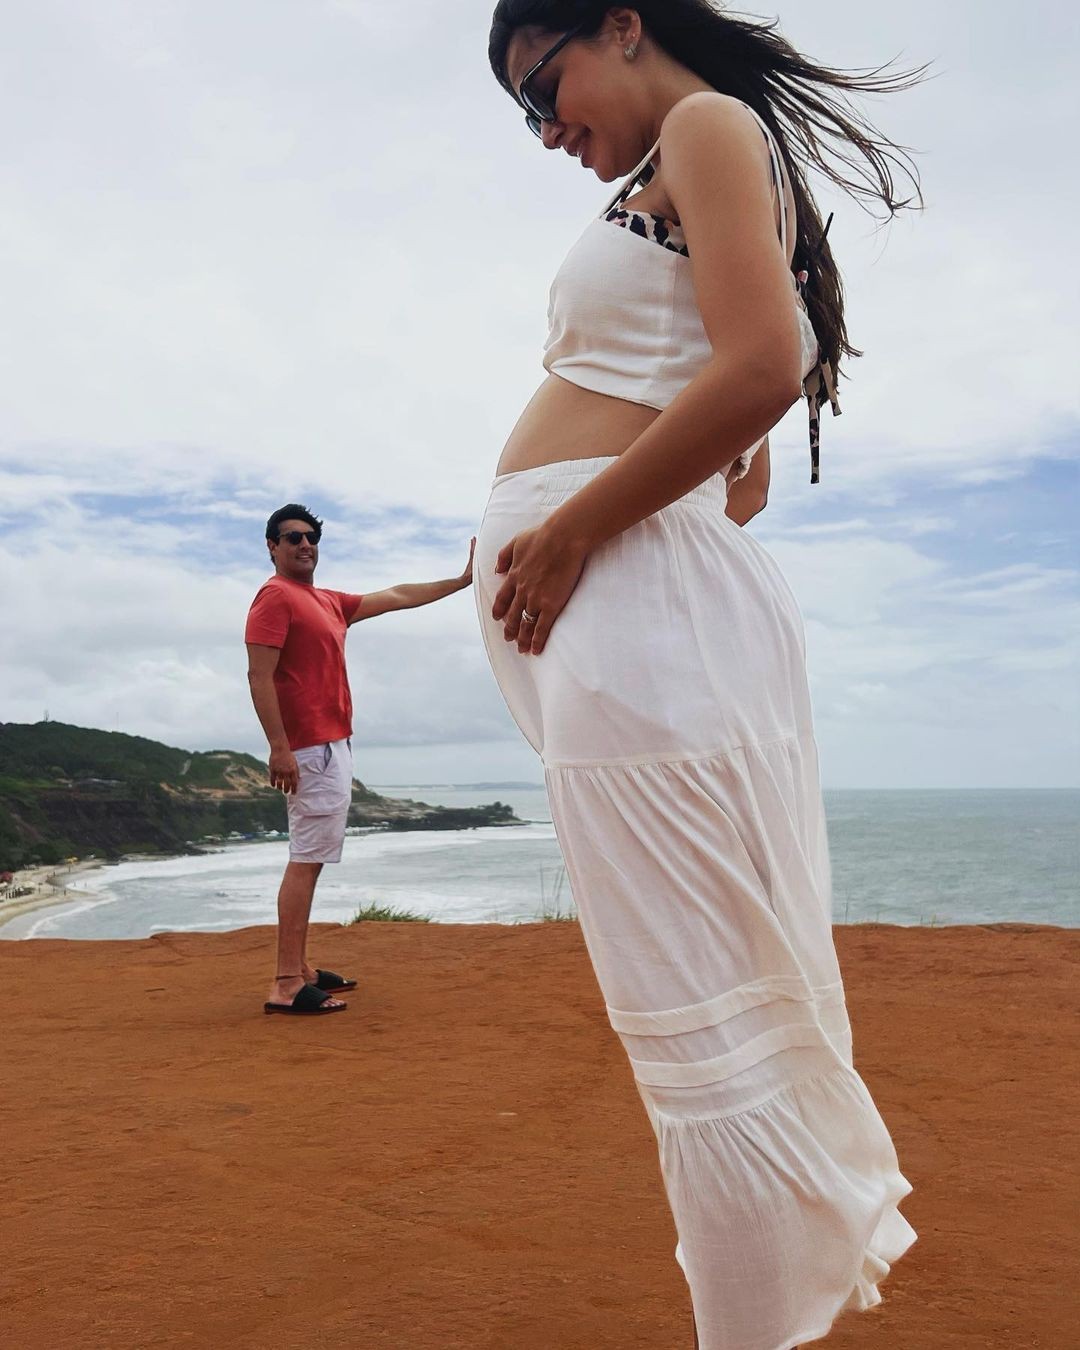 Bruno De Luca e a noiva, Sthéfany Vidal fazem fotos divertidas em viagem (Foto: @danielfotosoreidasfotos )